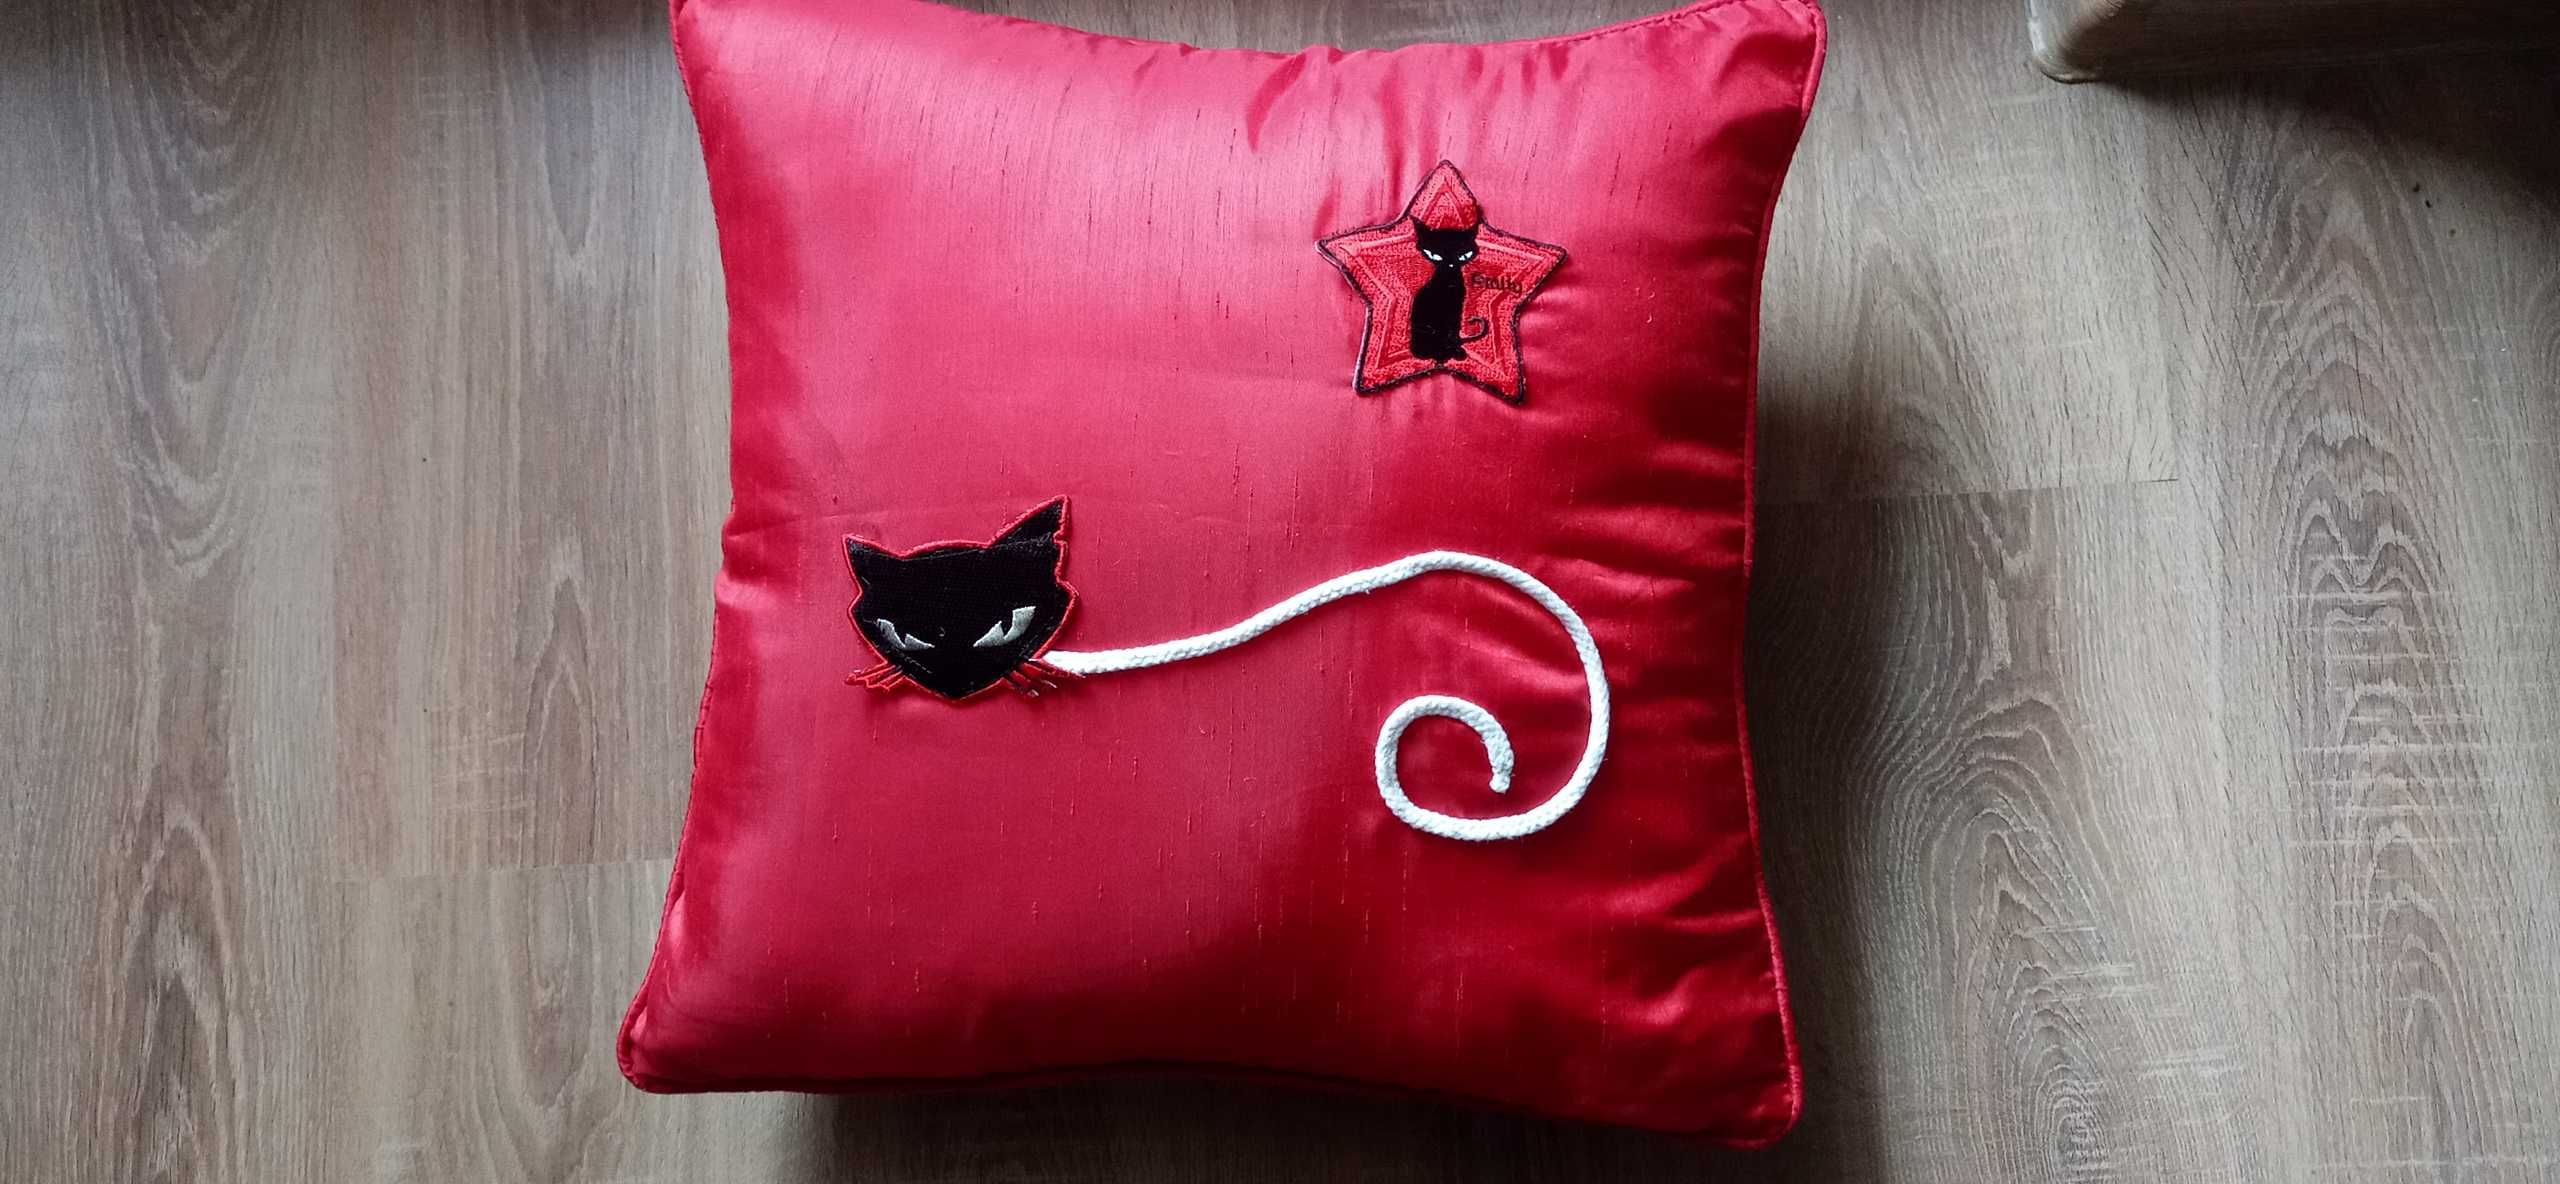 Poduszka z kotem - 45 x 45 cm ( własnoręczna dekoracja)